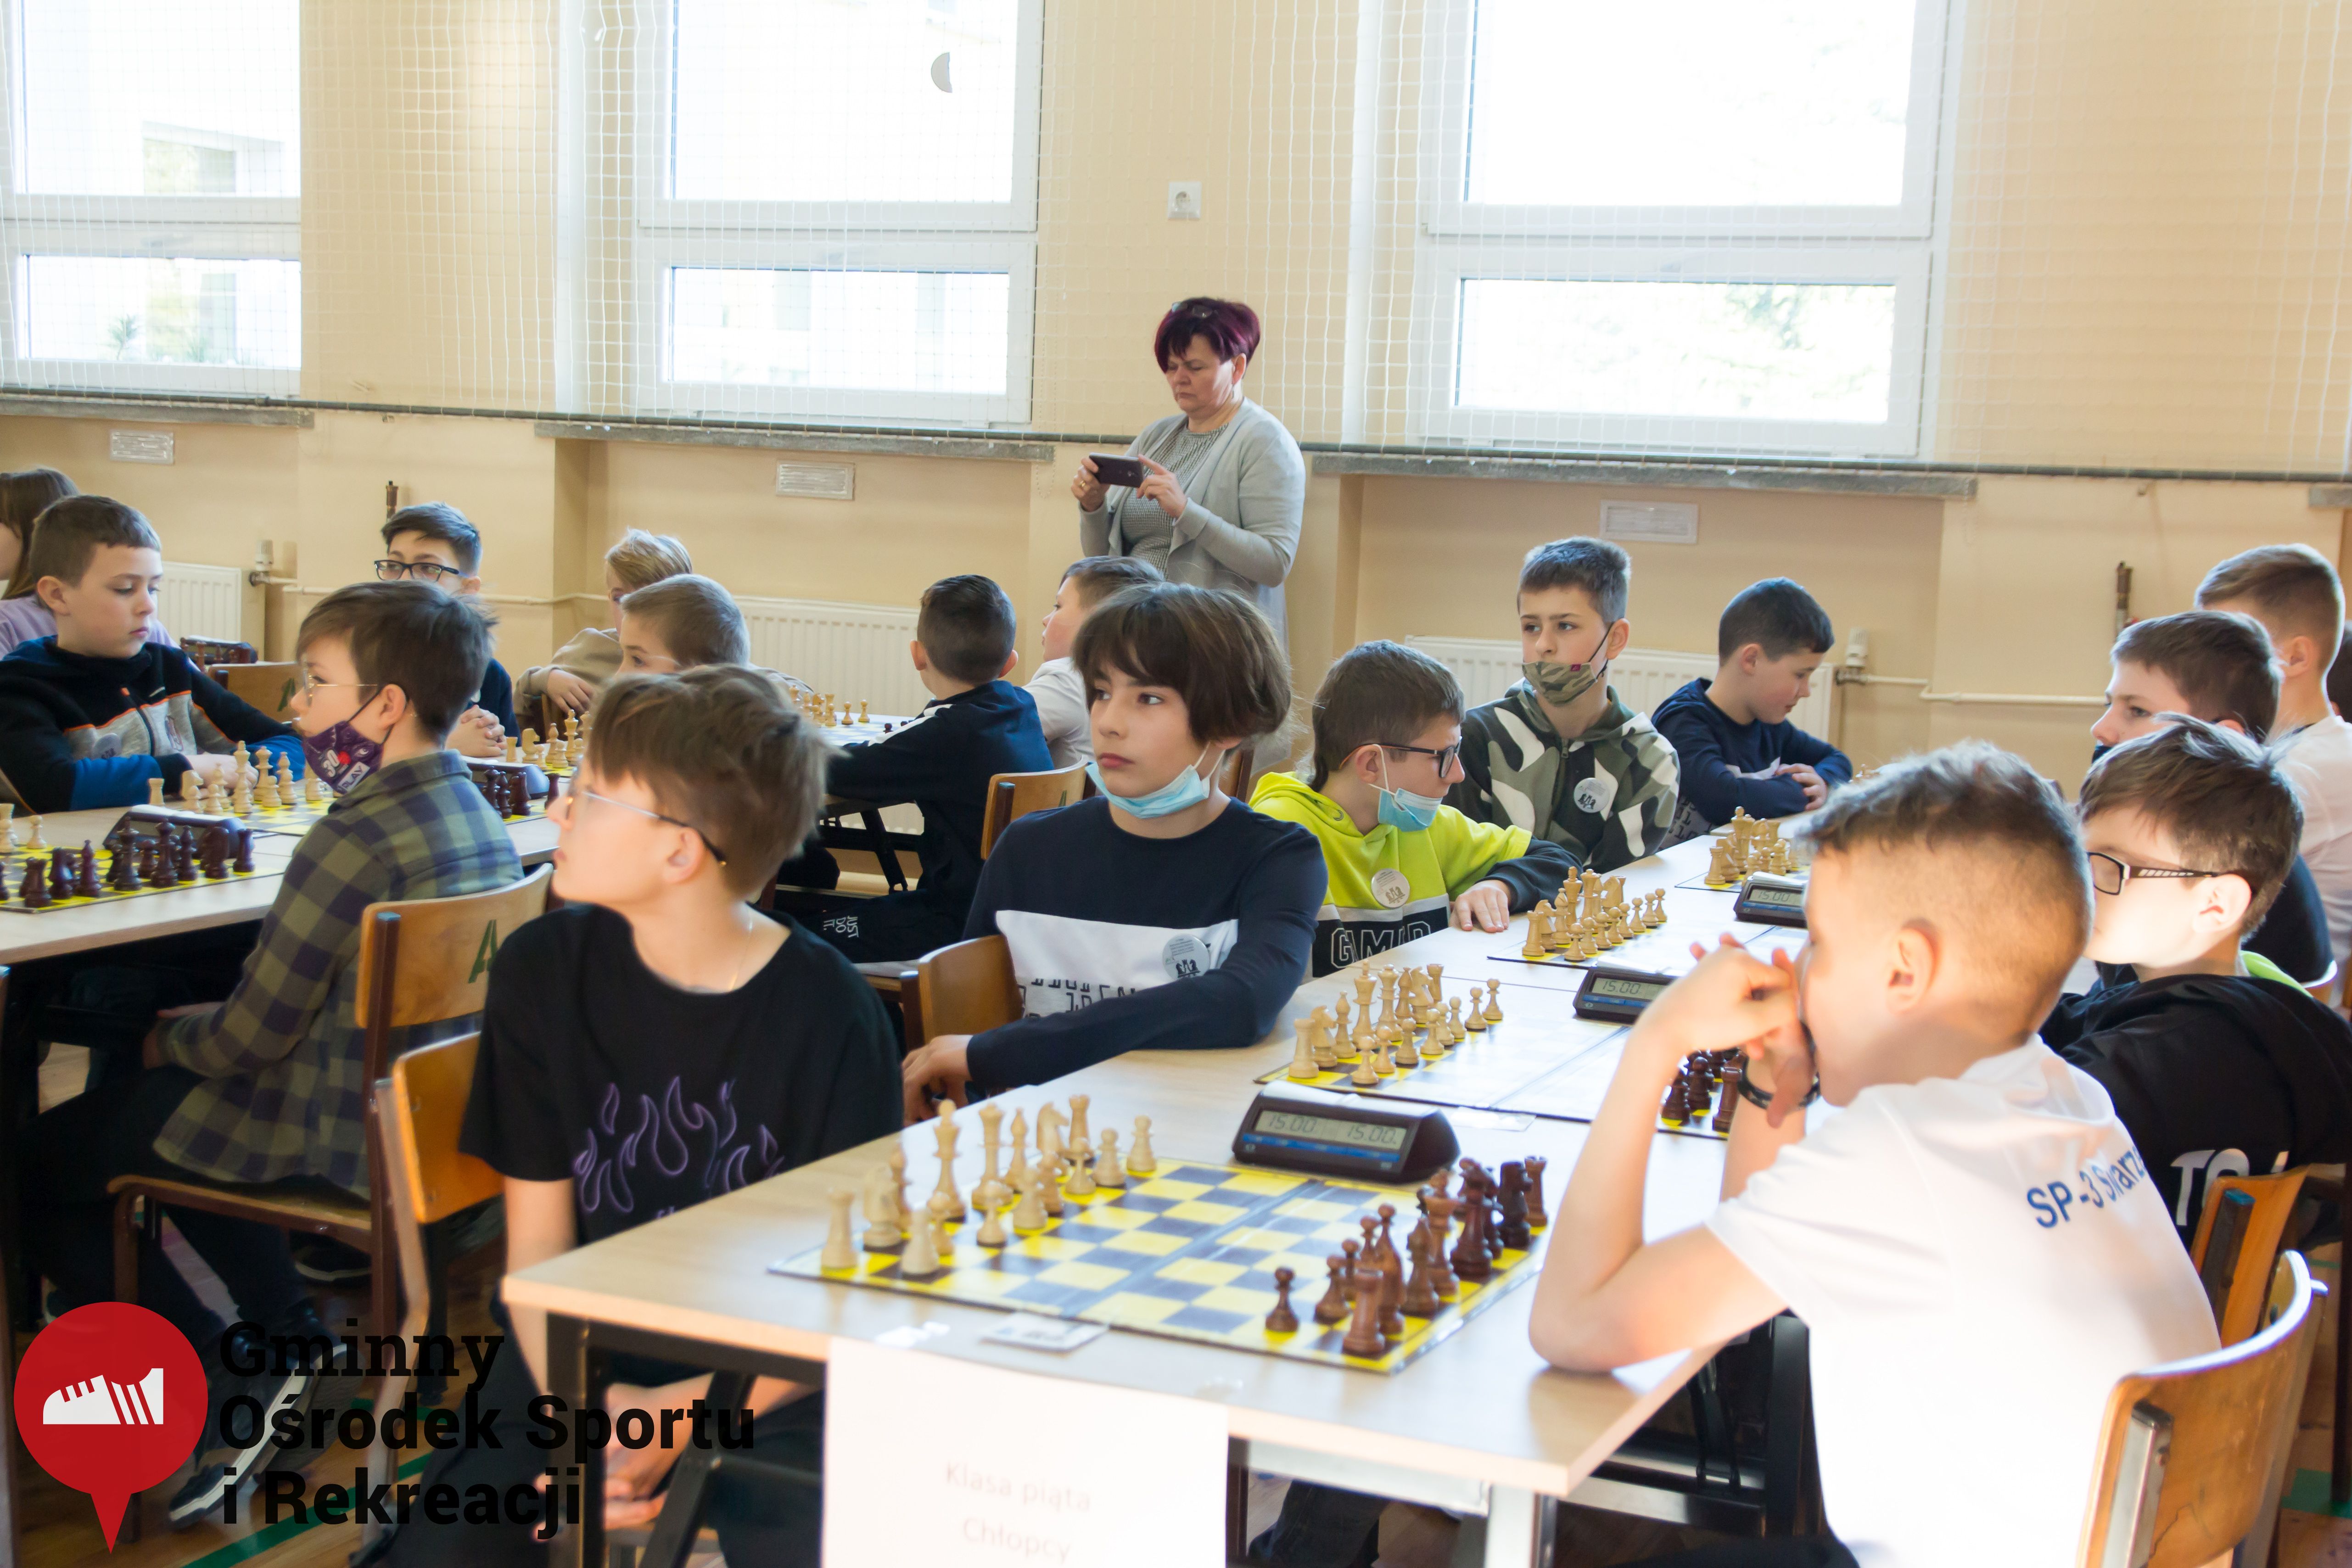 2022.03.12-13 Turniej szachowy - Edukacja przez Szachy015.jpg - 1,32 MB